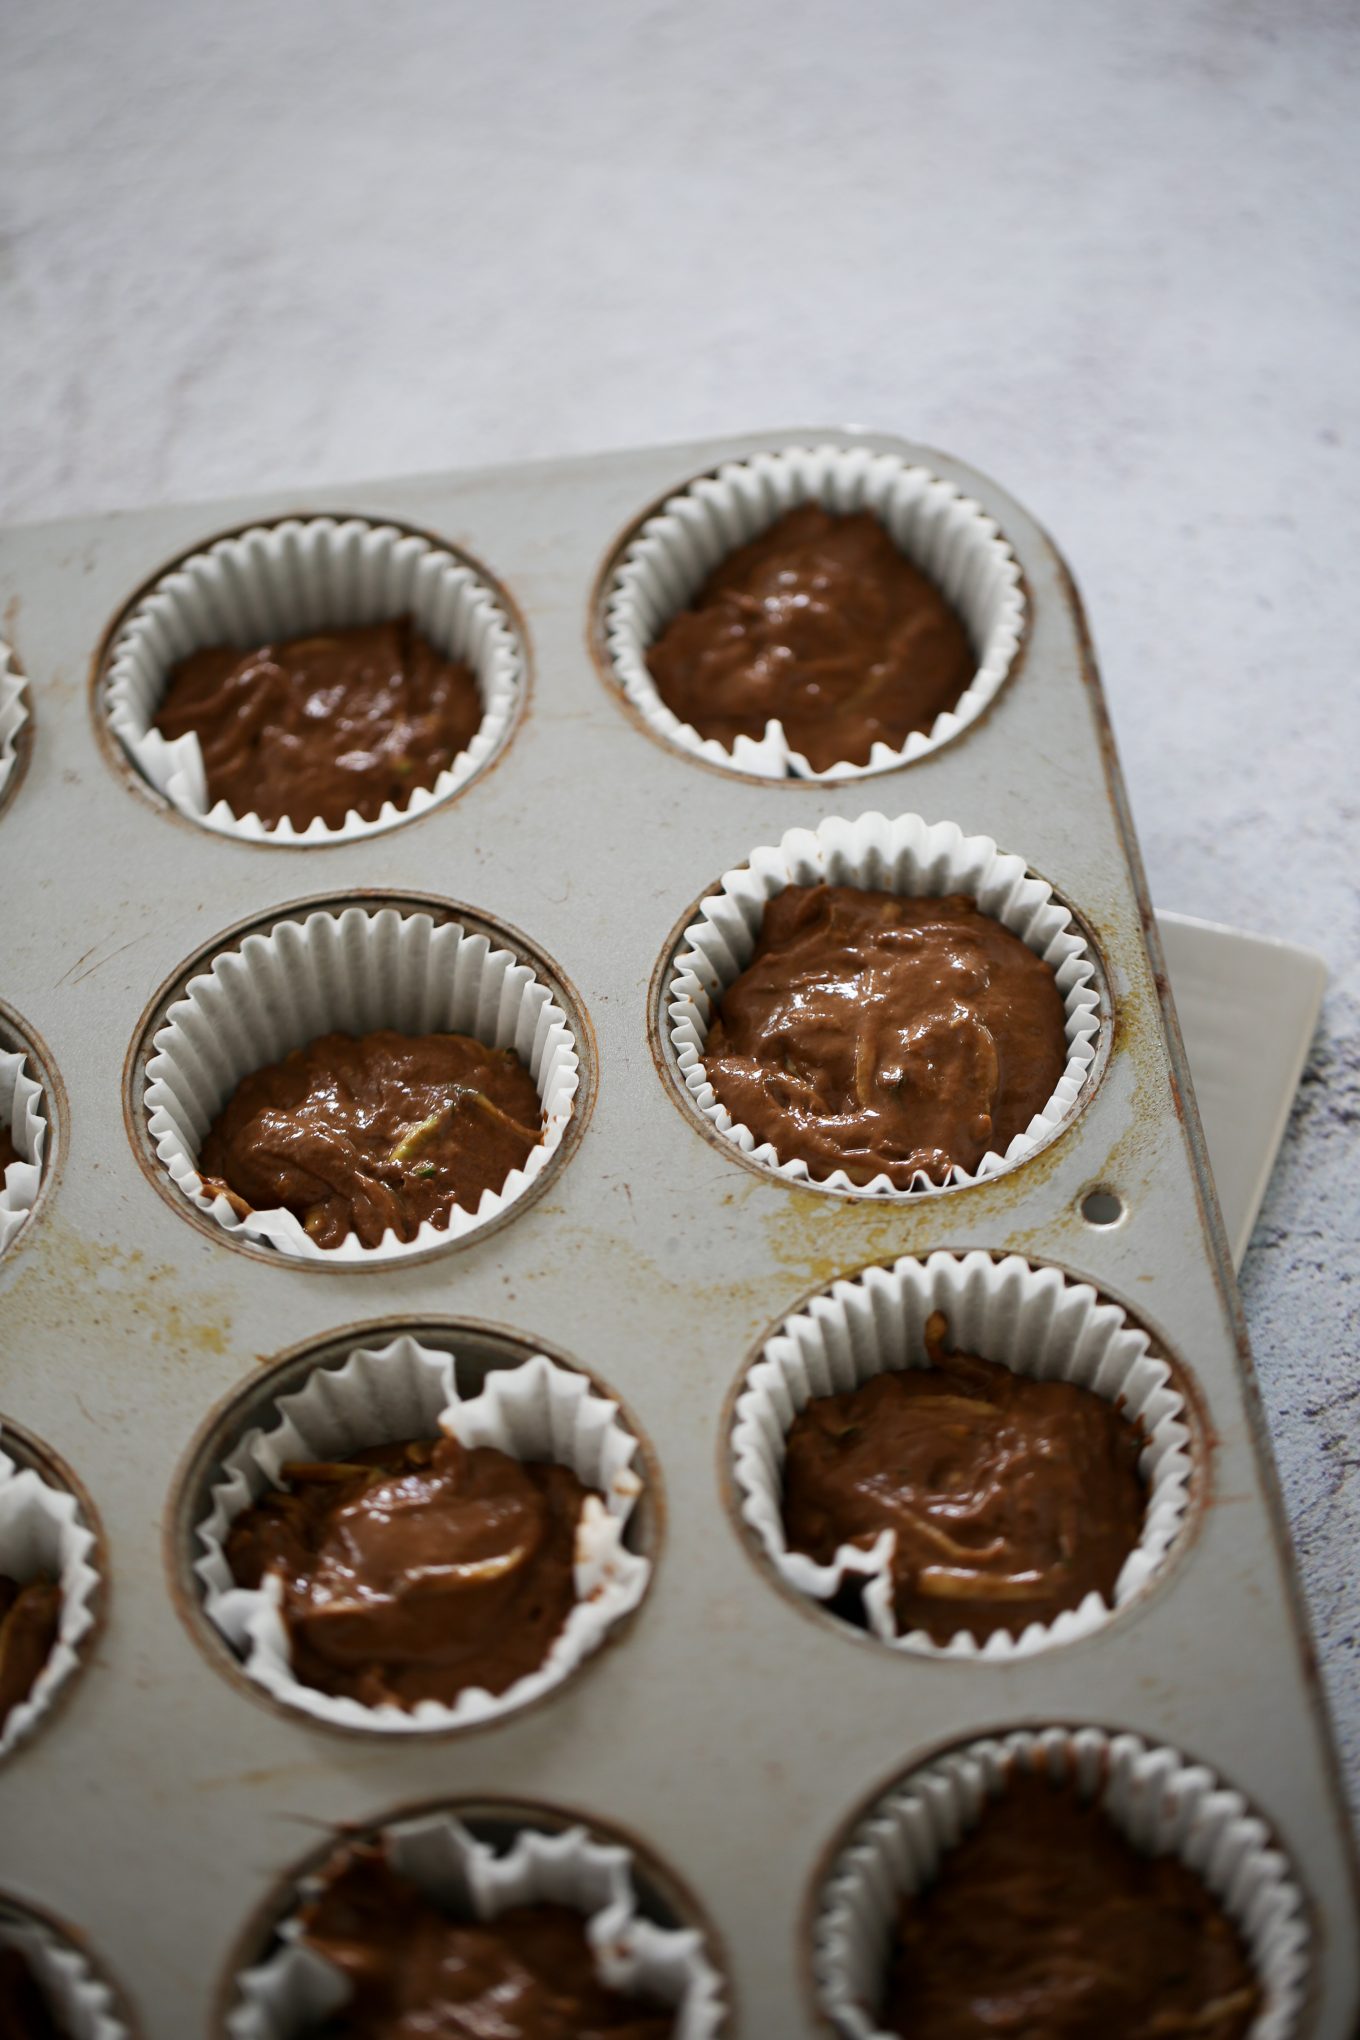 muffins de chocolate y calabacita en una charola para muffins antes de meter al horno